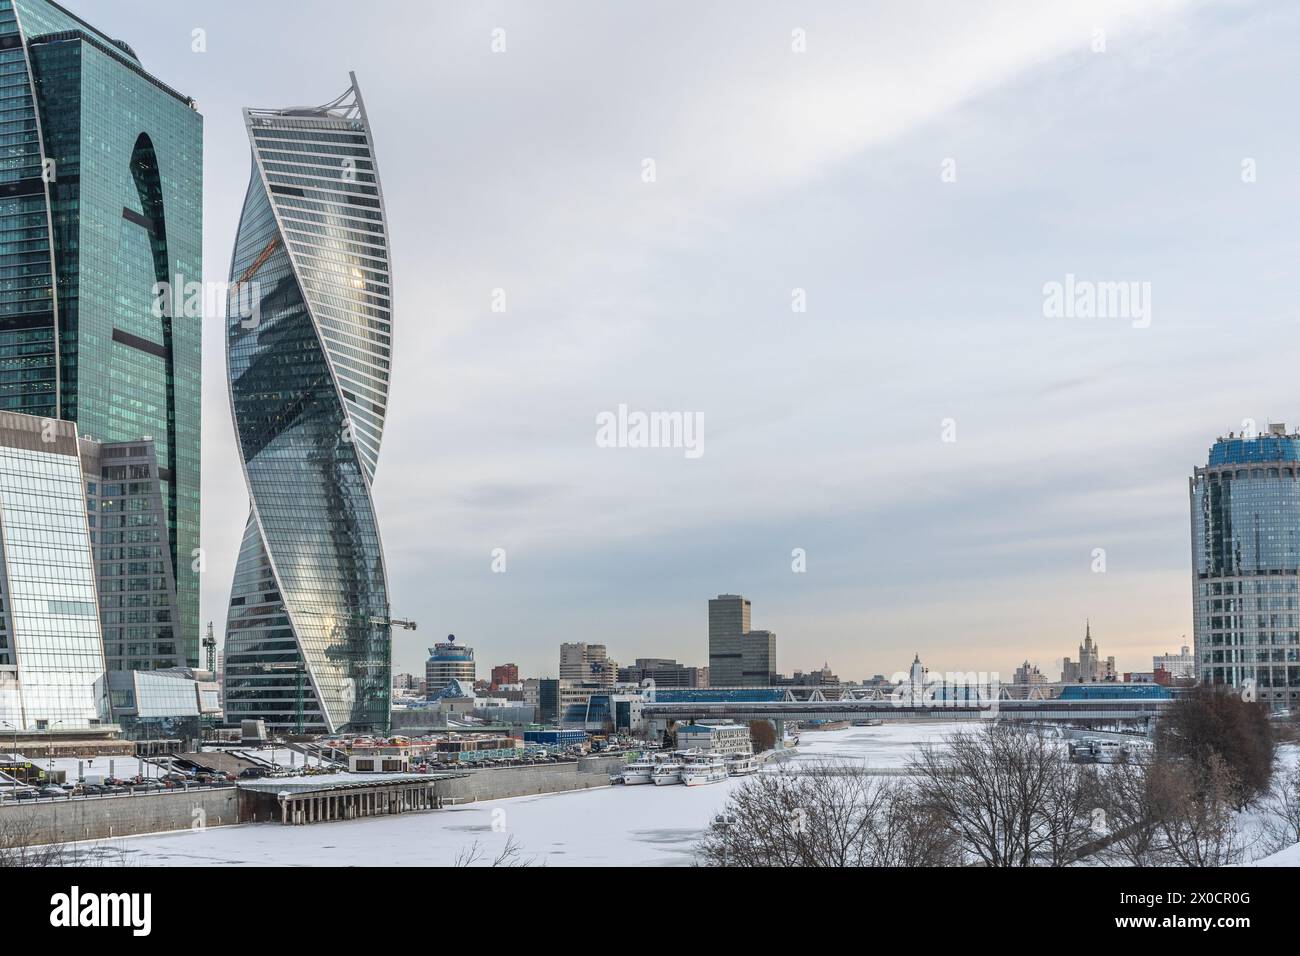 Moscou, Russie - 19 janvier 2018 : un paysage hivernal serein capture le contraste saisissant entre le calme de la nature et les imposantes merveilles architecturales, illu Banque D'Images